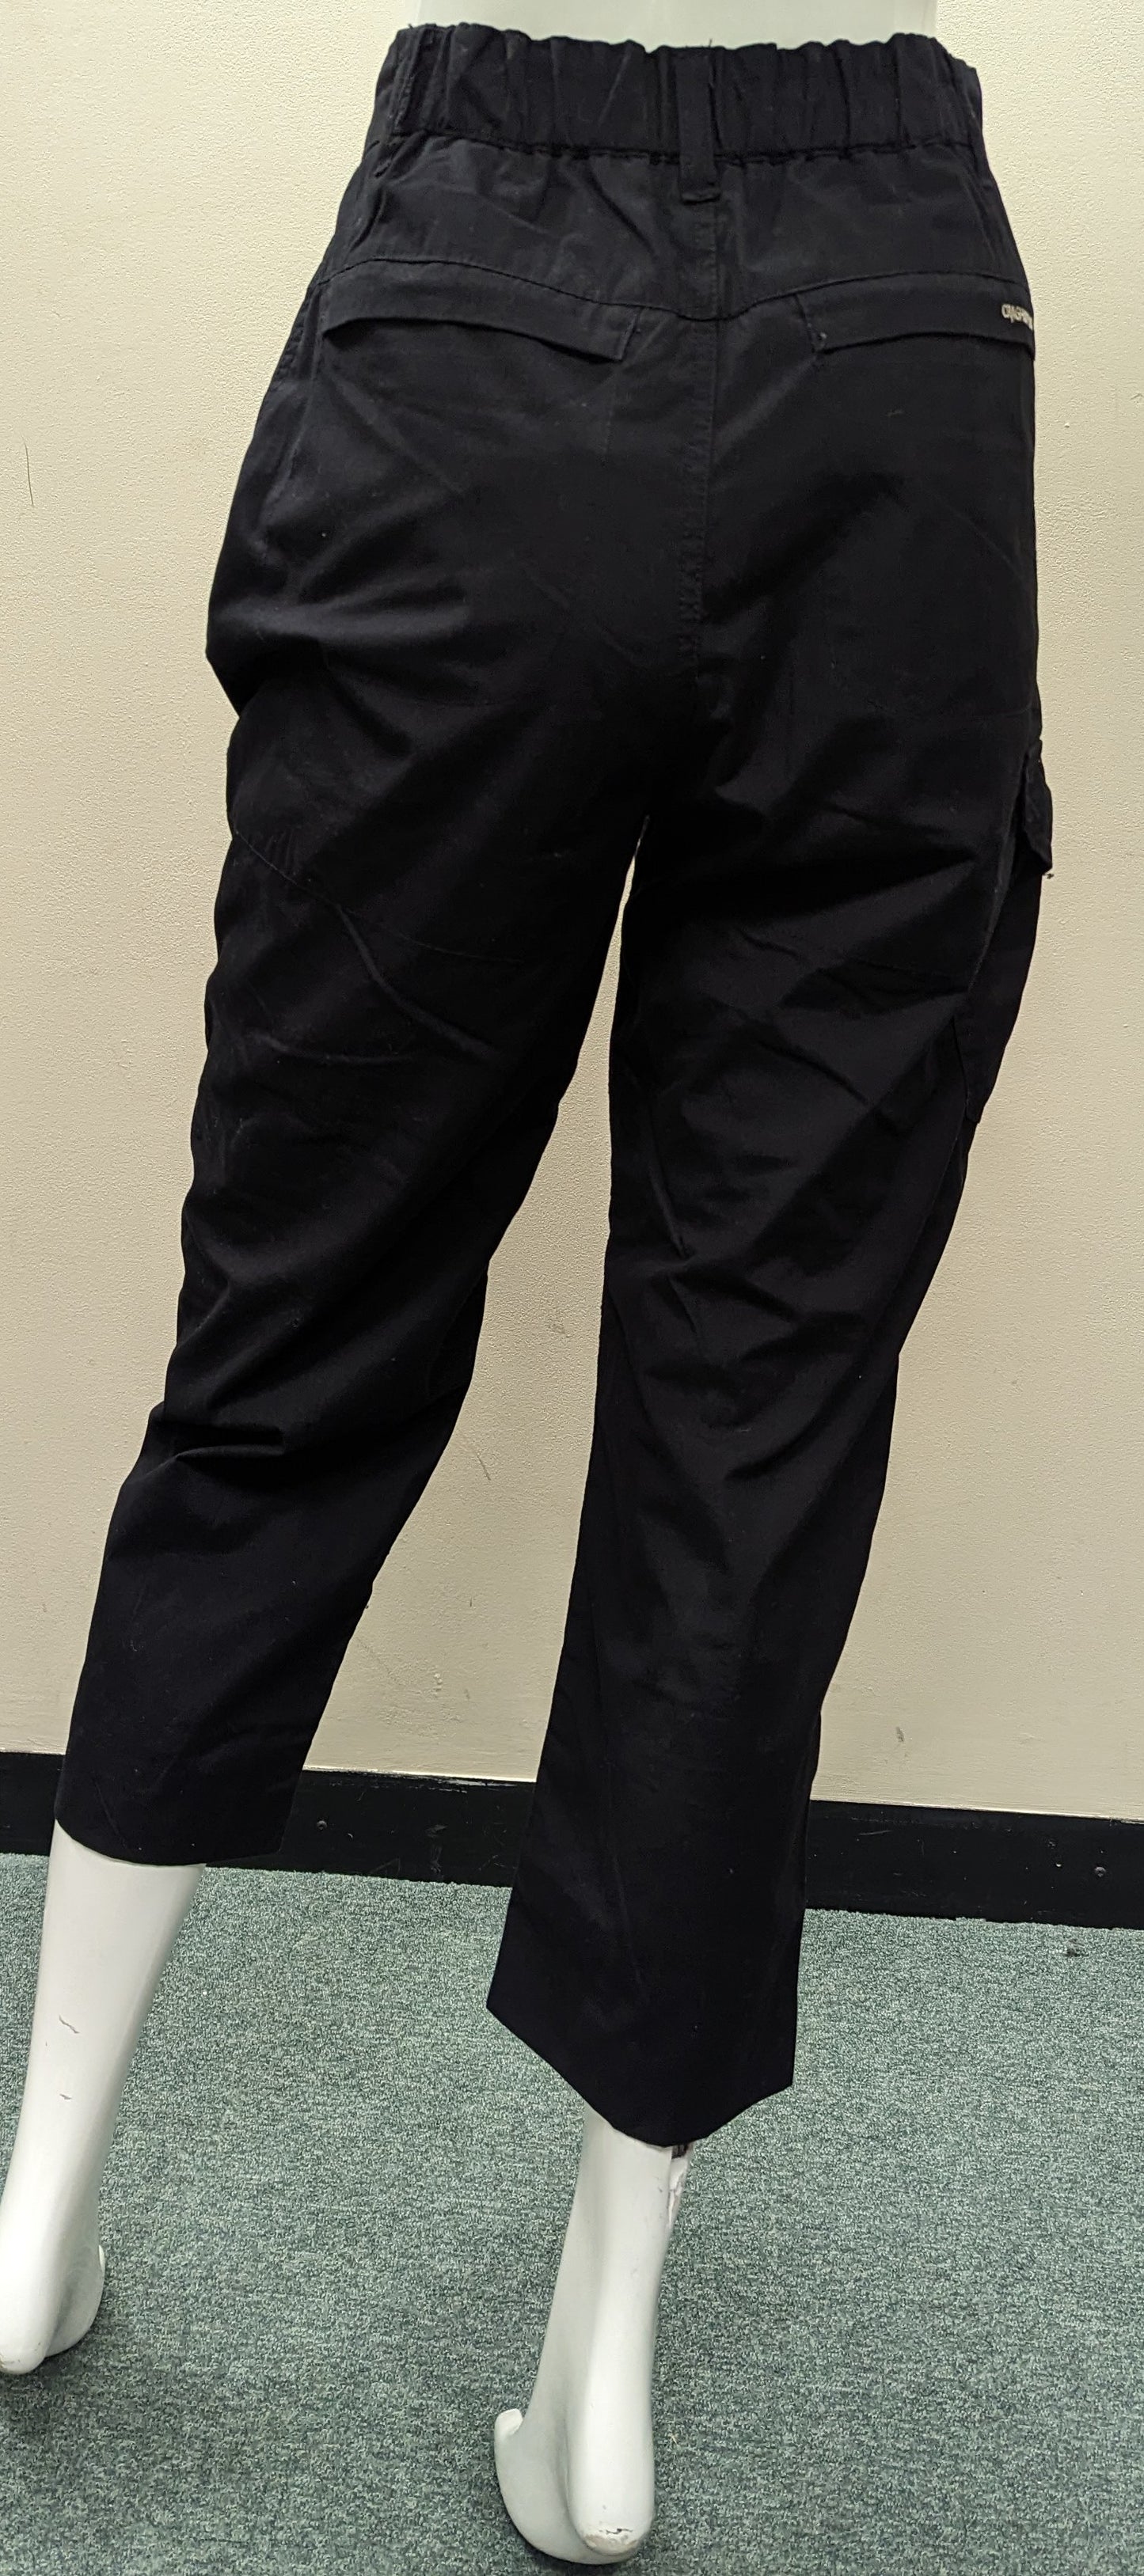 Ladies Craghopper 3/4 length Trousers - Size 10